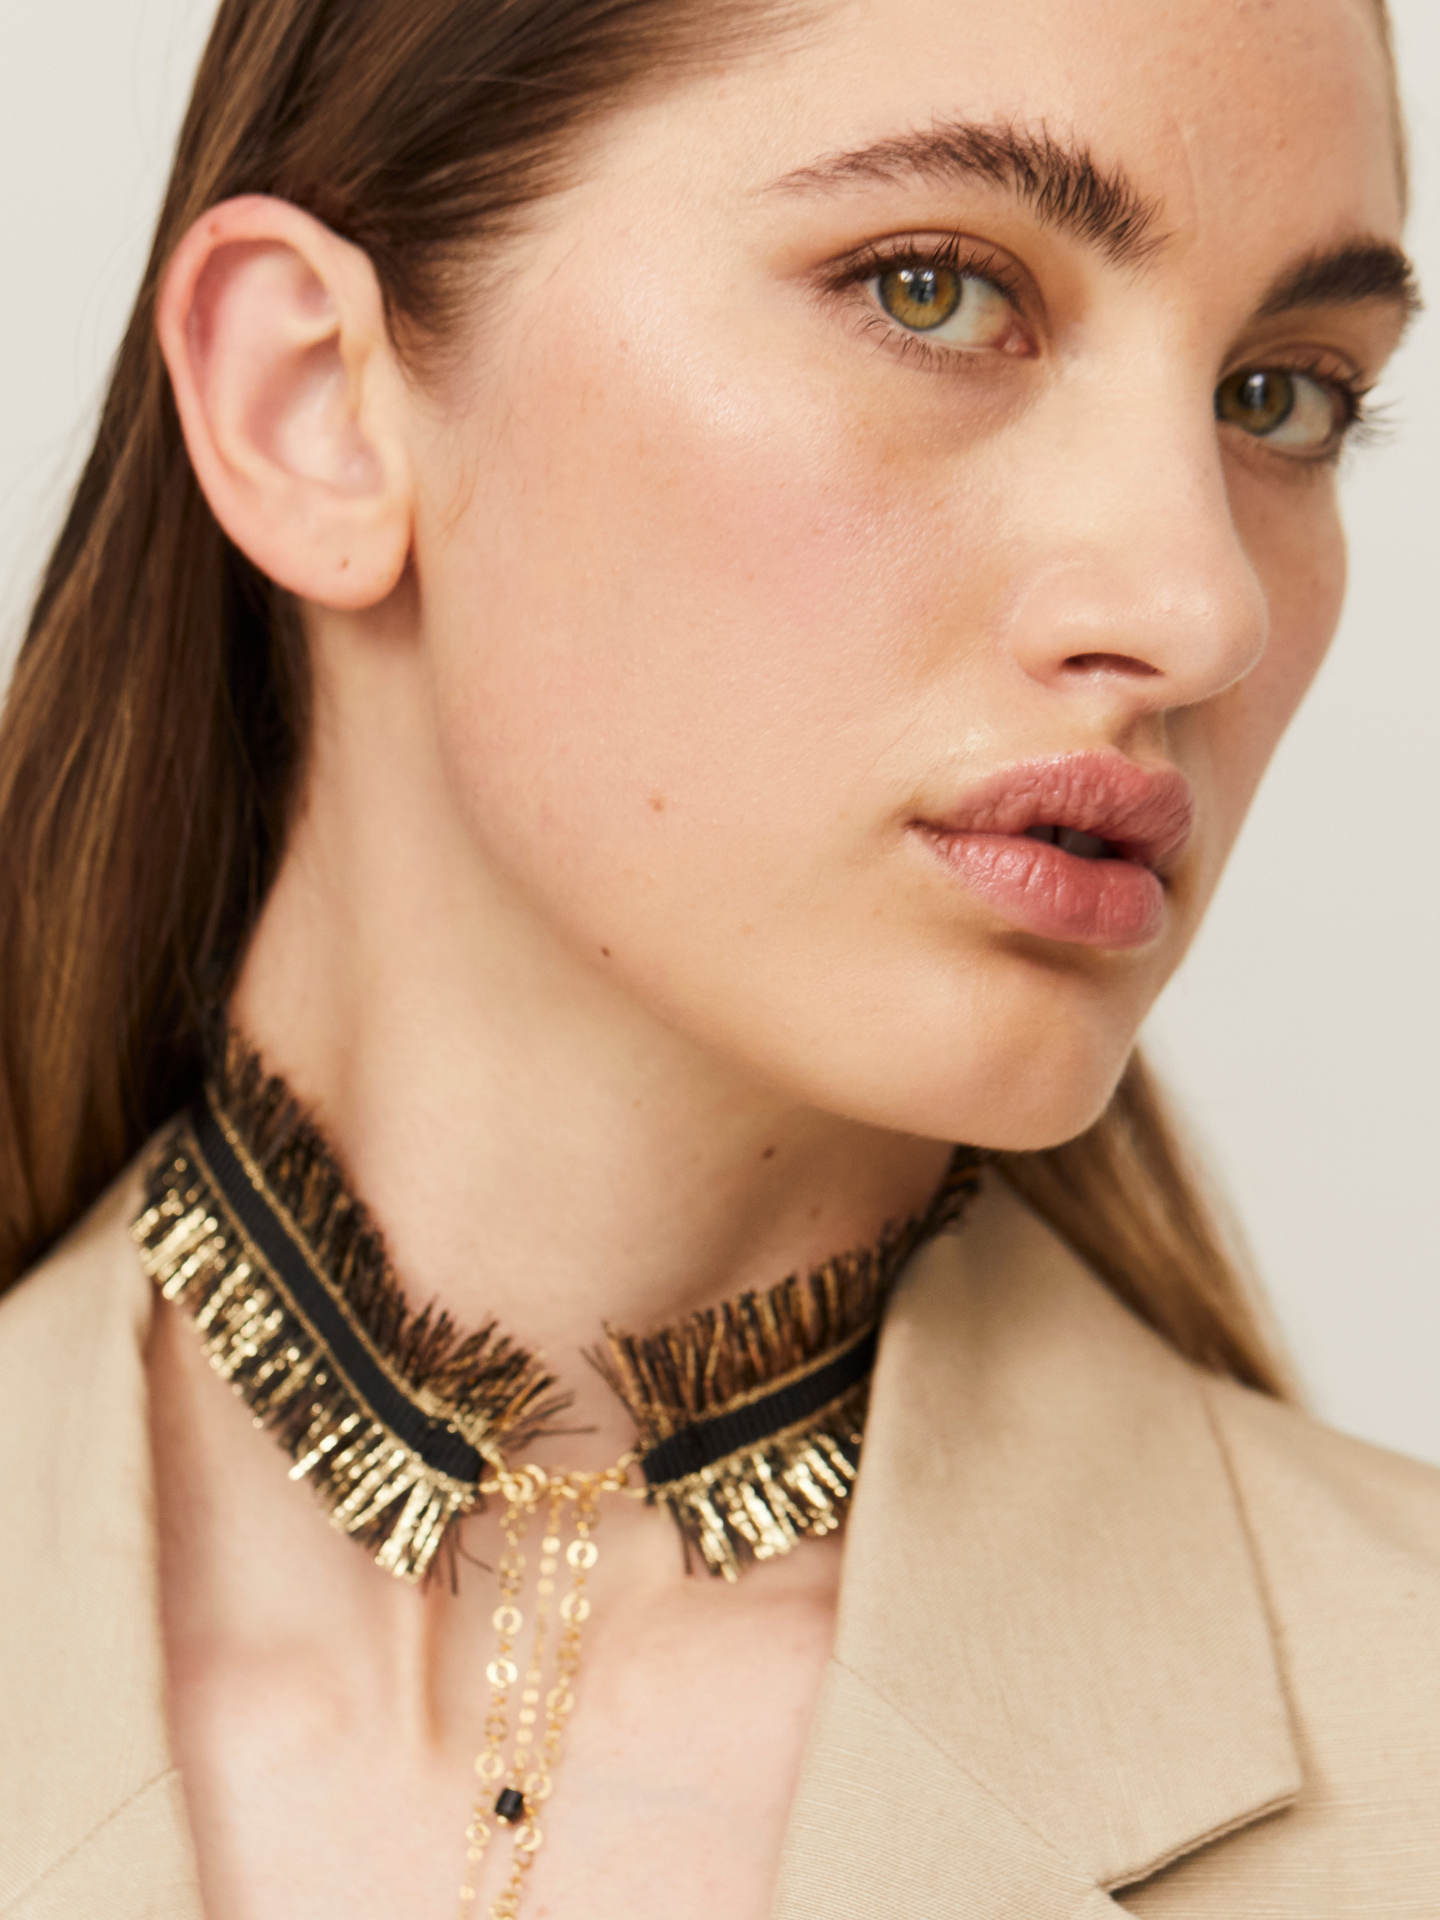 Exzentrische Halskette in Schwarz und Gold, getragen von einer jungen, attraktiven Frau, die zusätzlich einen hellen Blazer trägt und in die Kamera guckt.